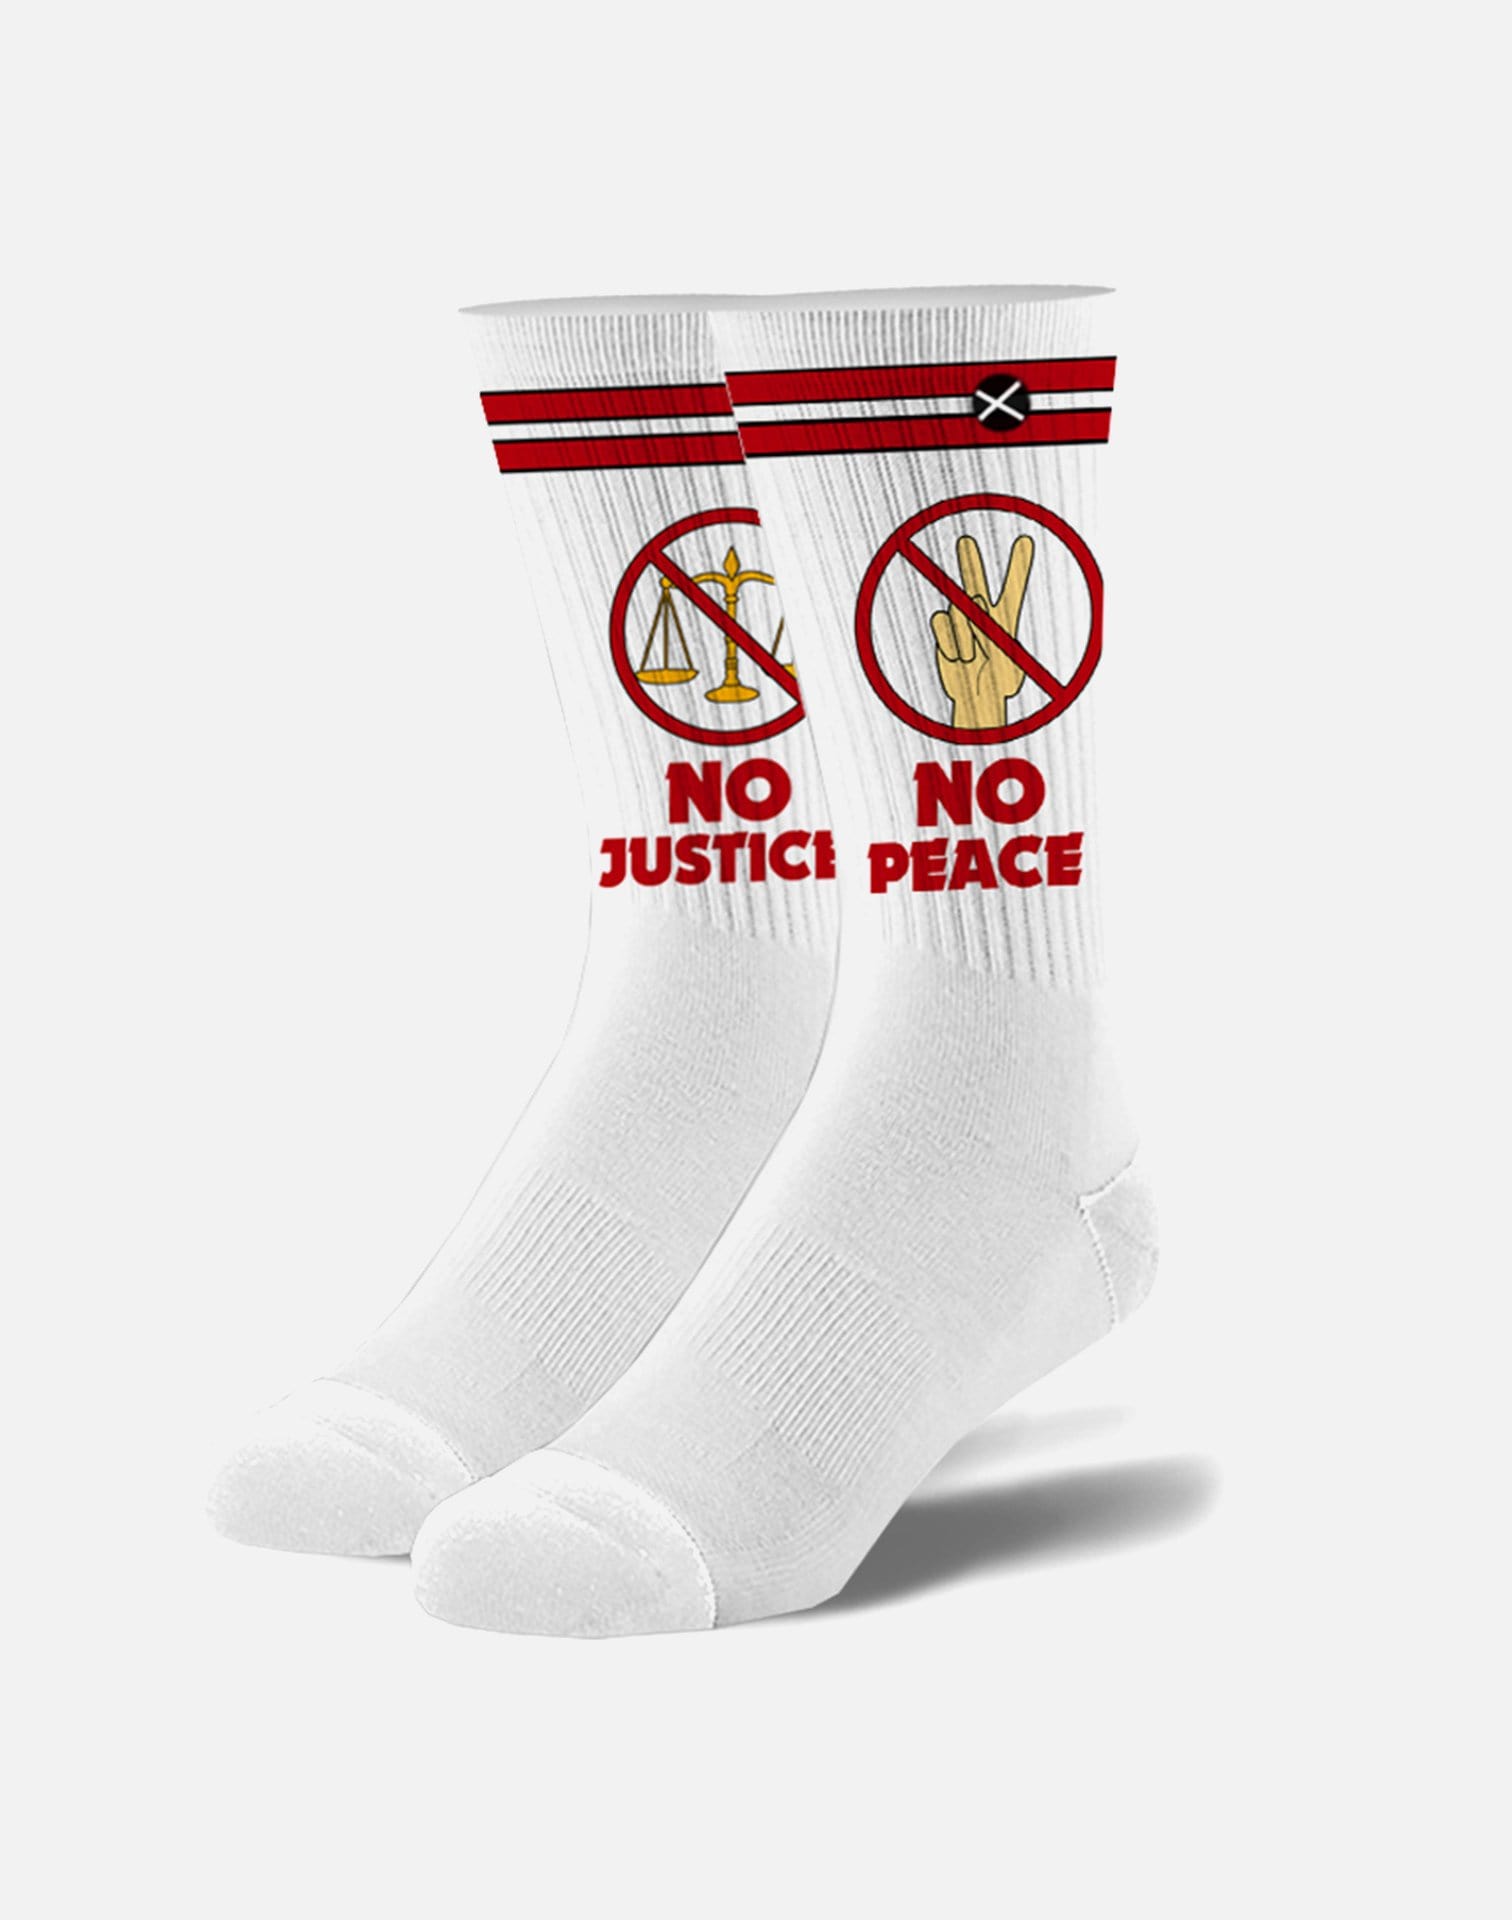 Odd Sox No justice No Peace Socks